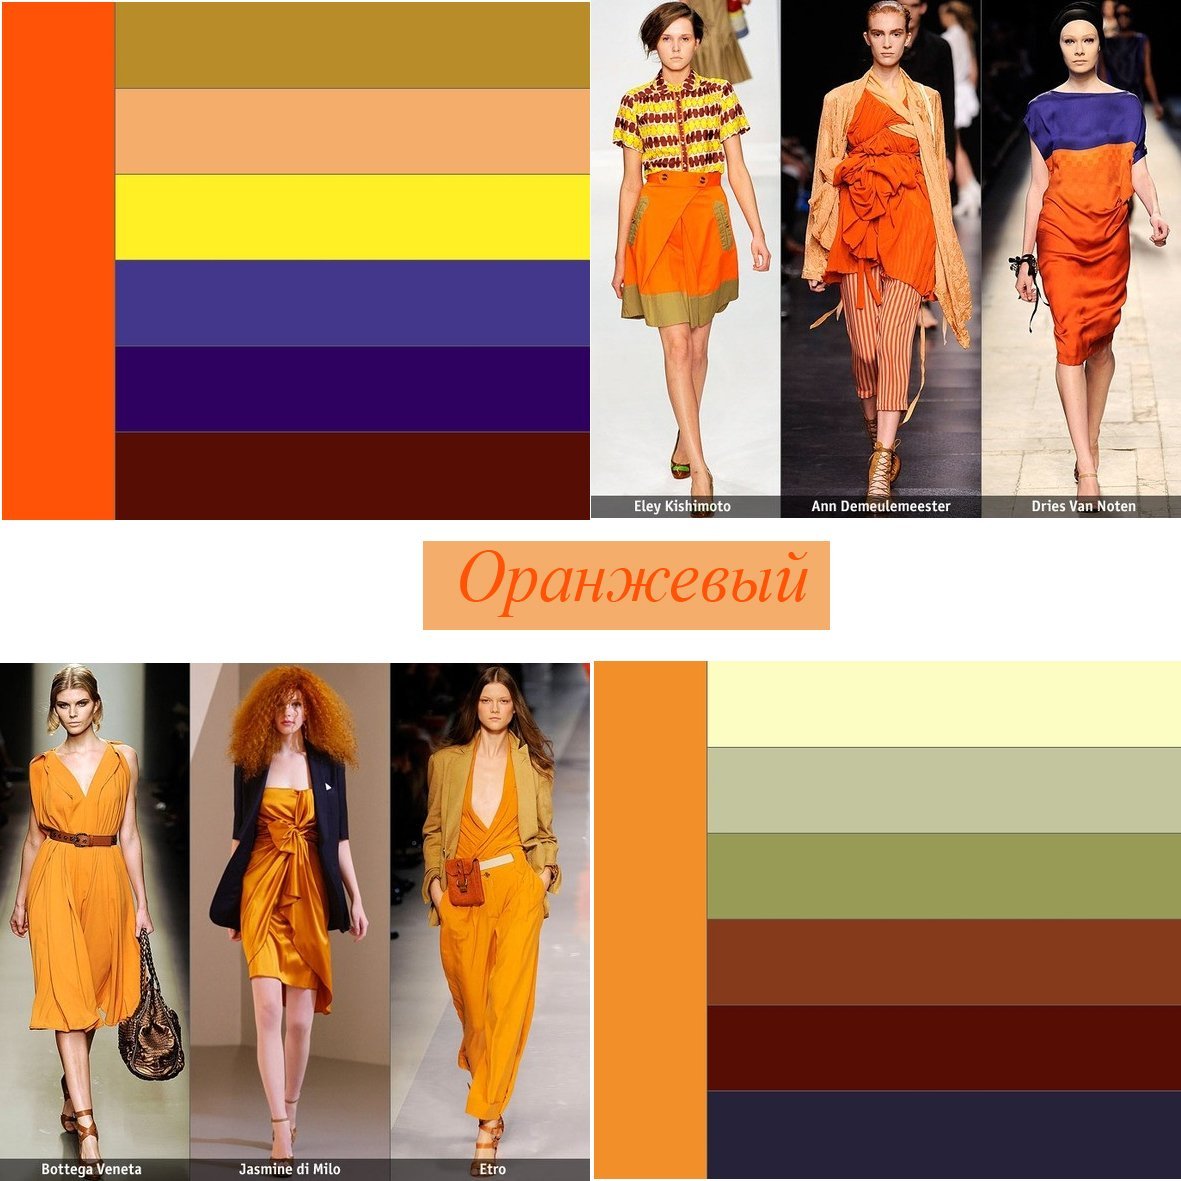 Оранжевый цвет по другому. Цветовые сочетания с оранжевым. Сочетание цветов в одежде. Оранжевый сочетание цветов в одежде. Сочетание оранжевого в одежде.